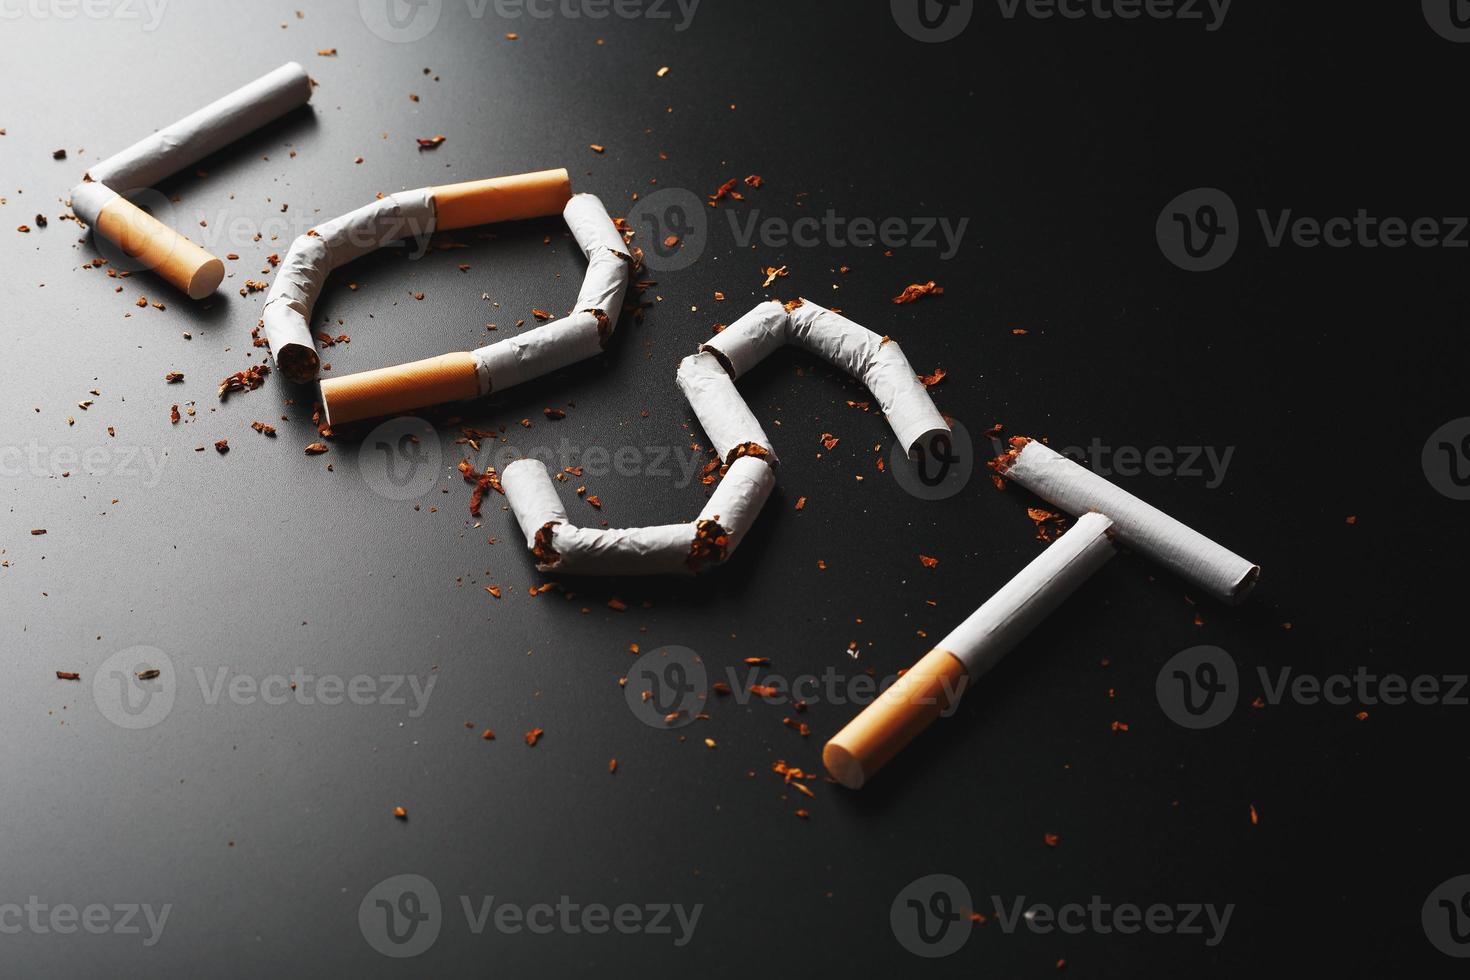 die von Zigaretten verlorene Inschrift auf schwarzem Hintergrund. aufhören zu rauchen. das Konzept des Rauchens tötet. Motivationsaufschrift, mit dem Rauchen aufzuhören, ungesunde Angewohnheit. foto